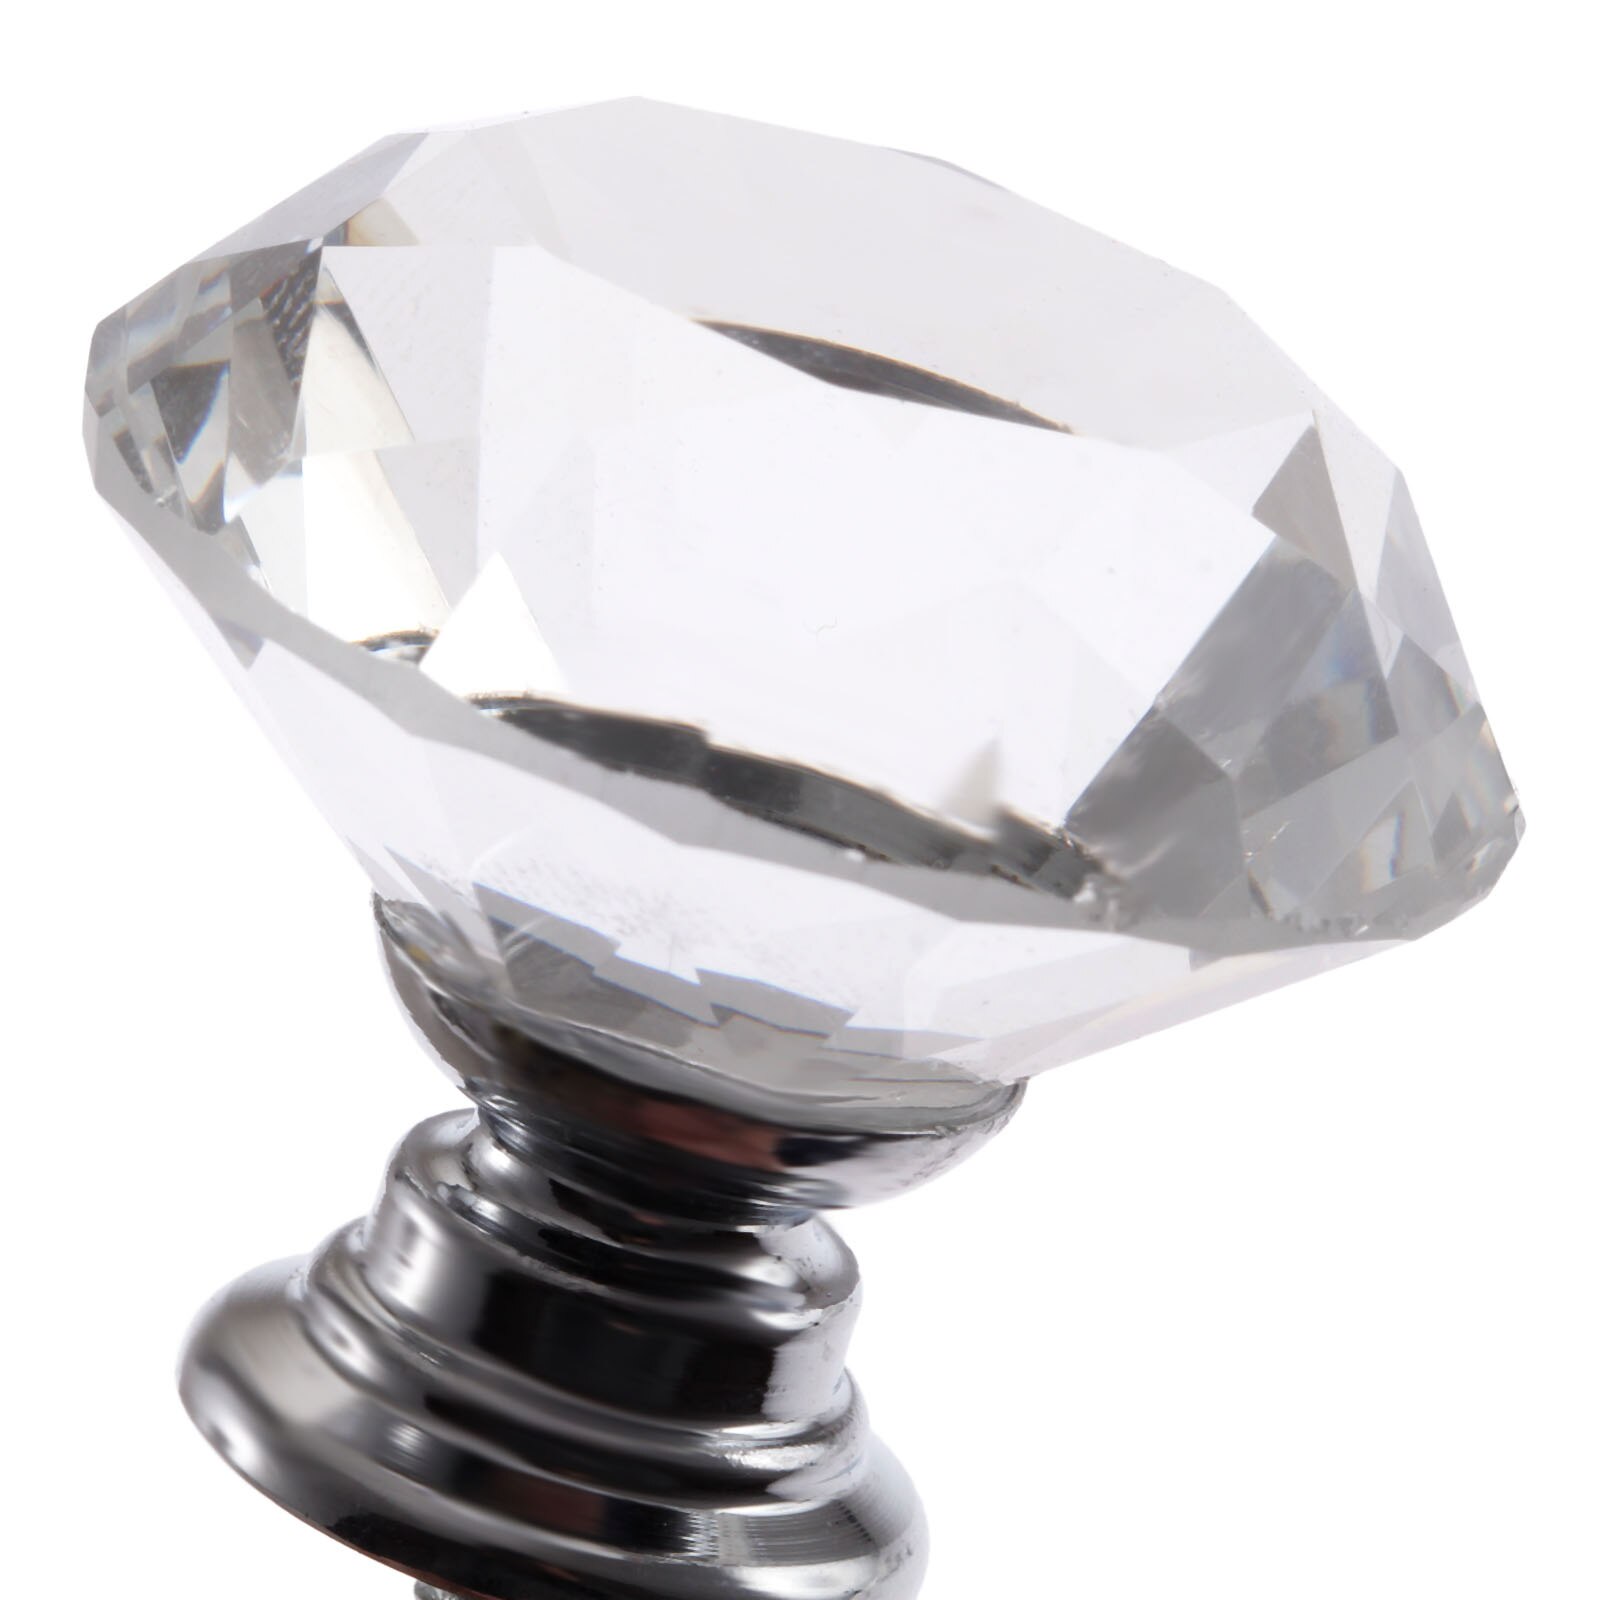 1x diamantformede krystalglasknopper skabsskuffe trække køkkenskabsdør garderobehåndtag hardware